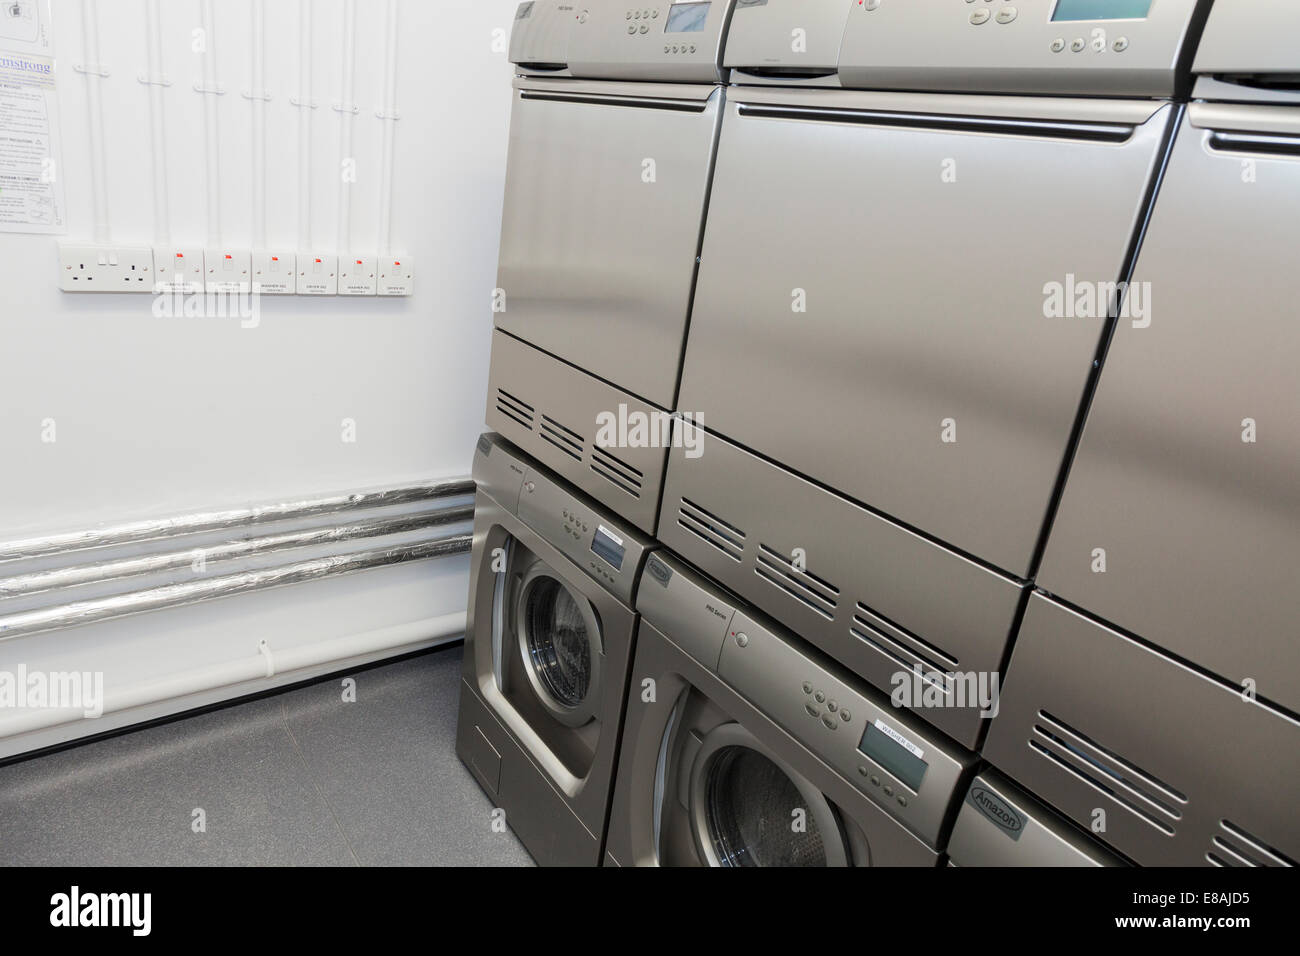 Lavatrici e asciugatrici in comune sala lavanderia. Foto Stock